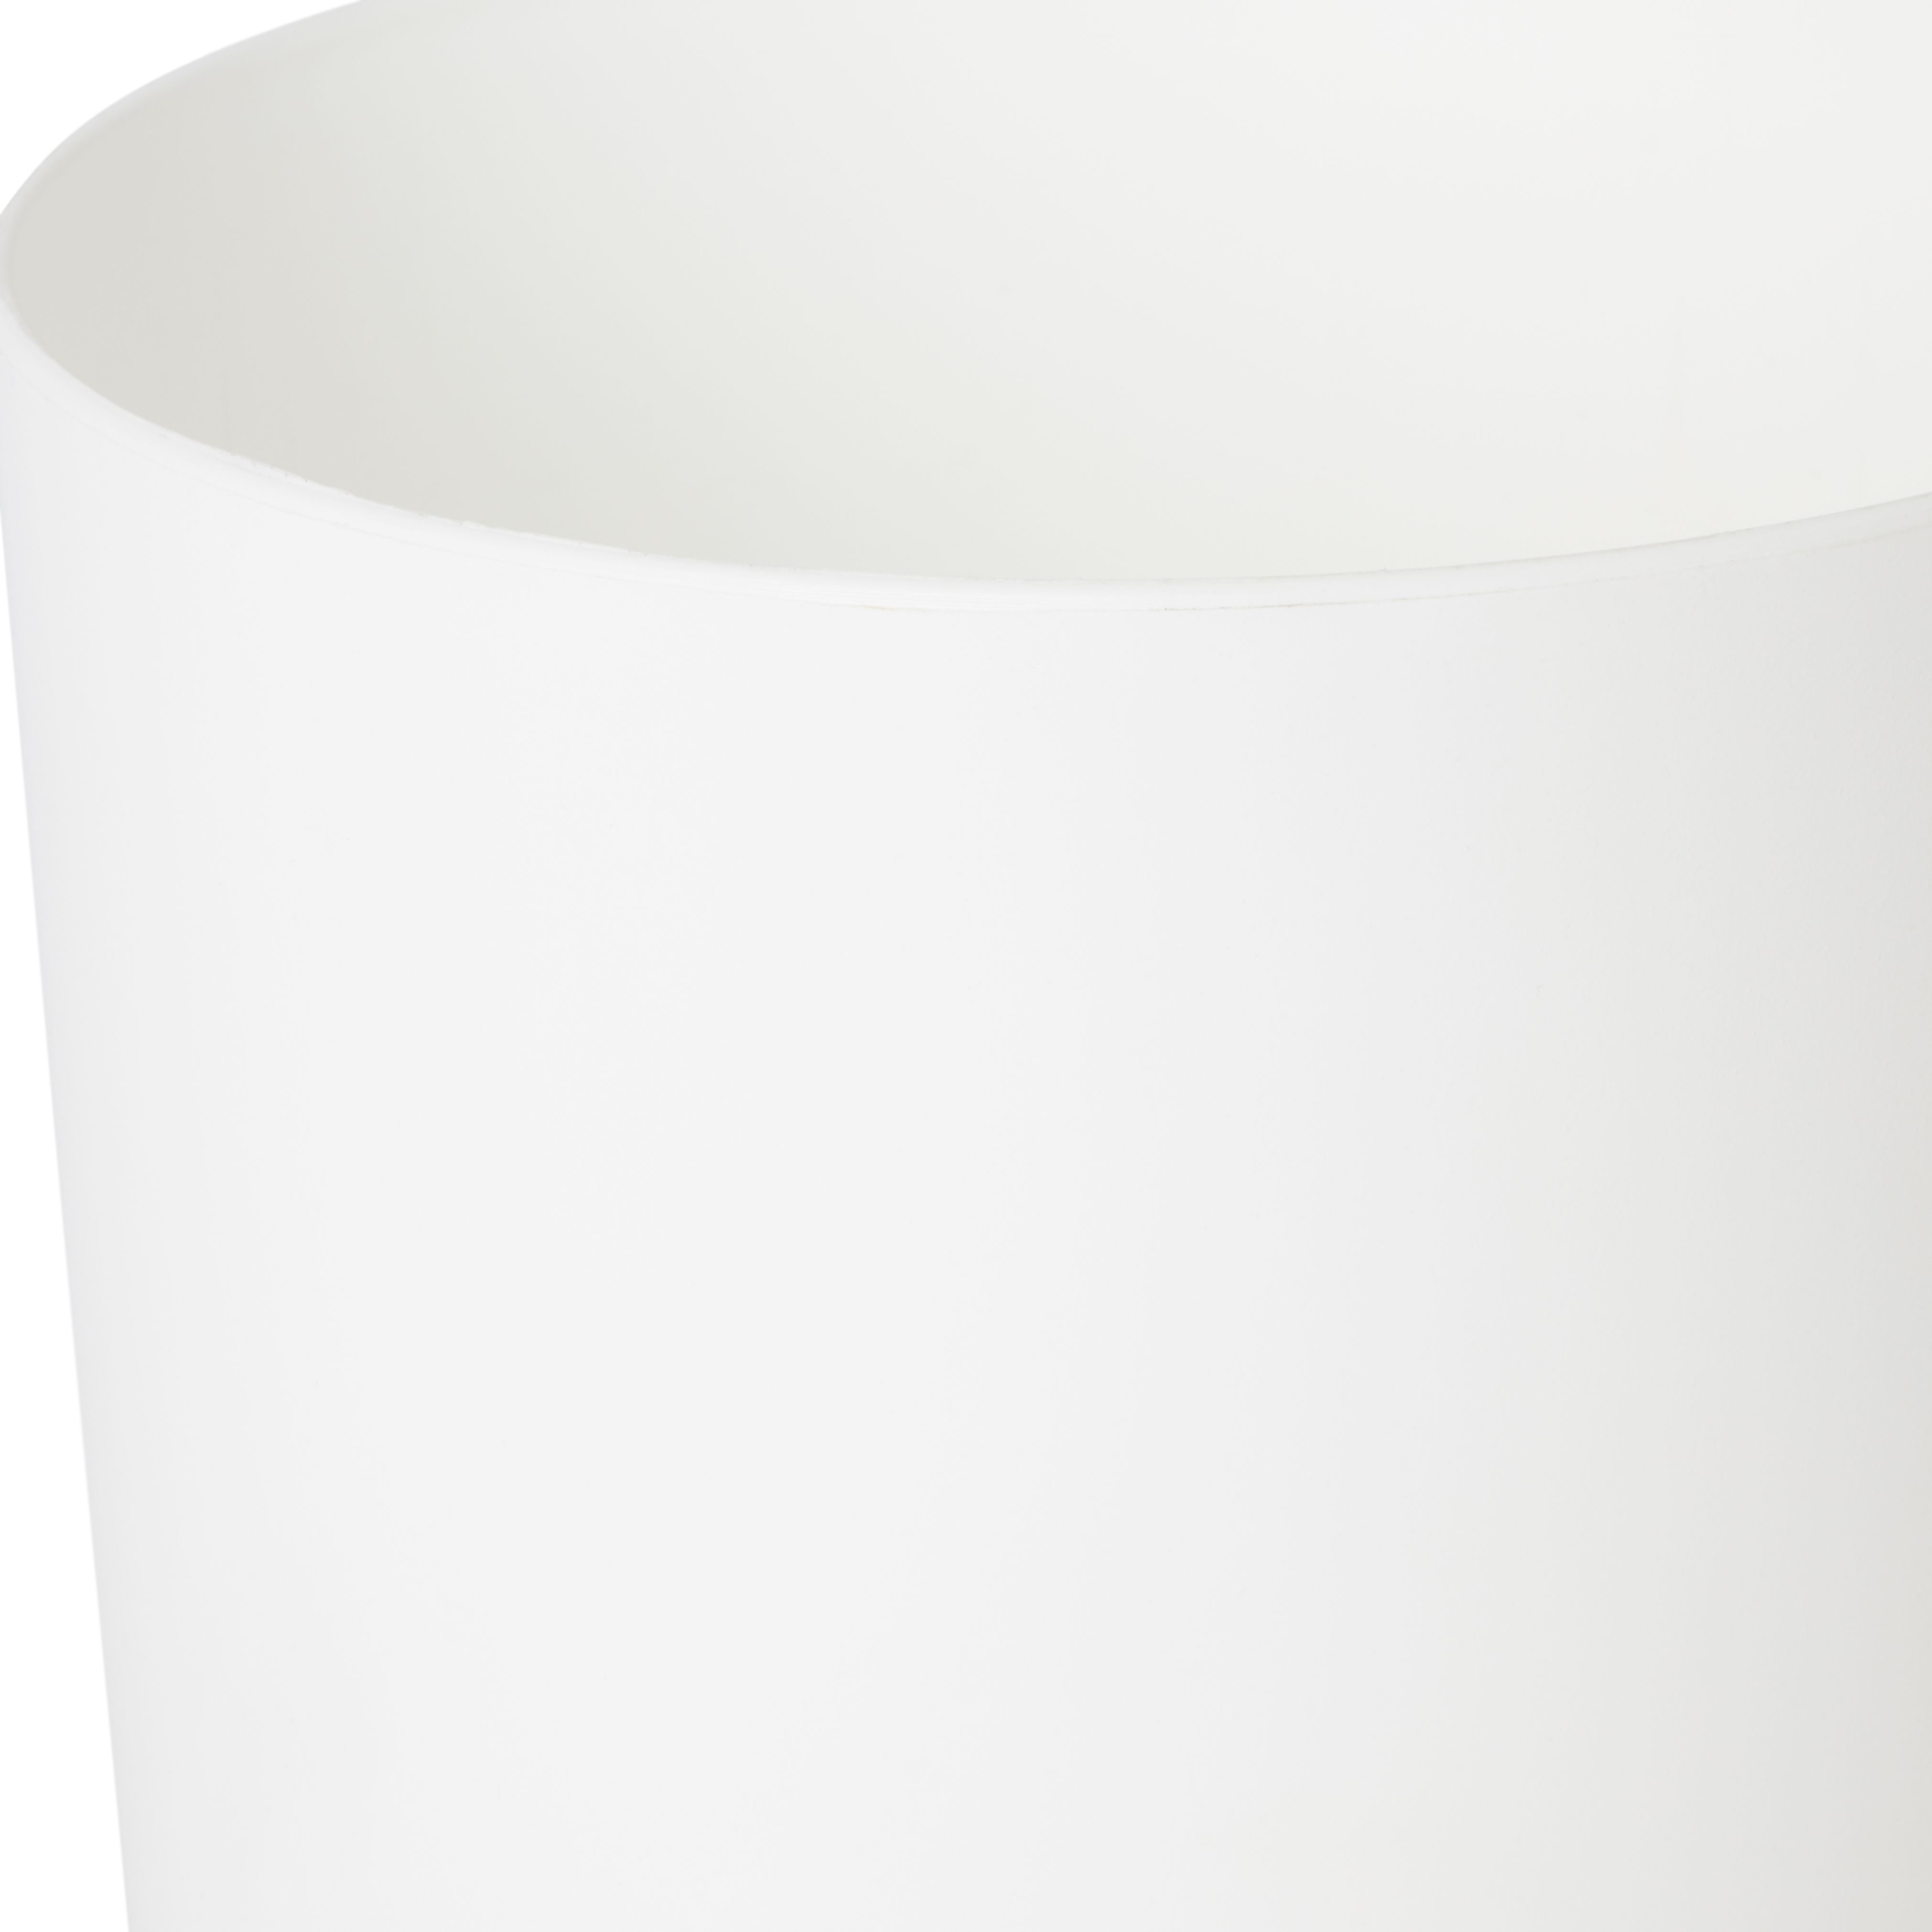 White Plastic Circular Plant pot (Dia)13.5cm